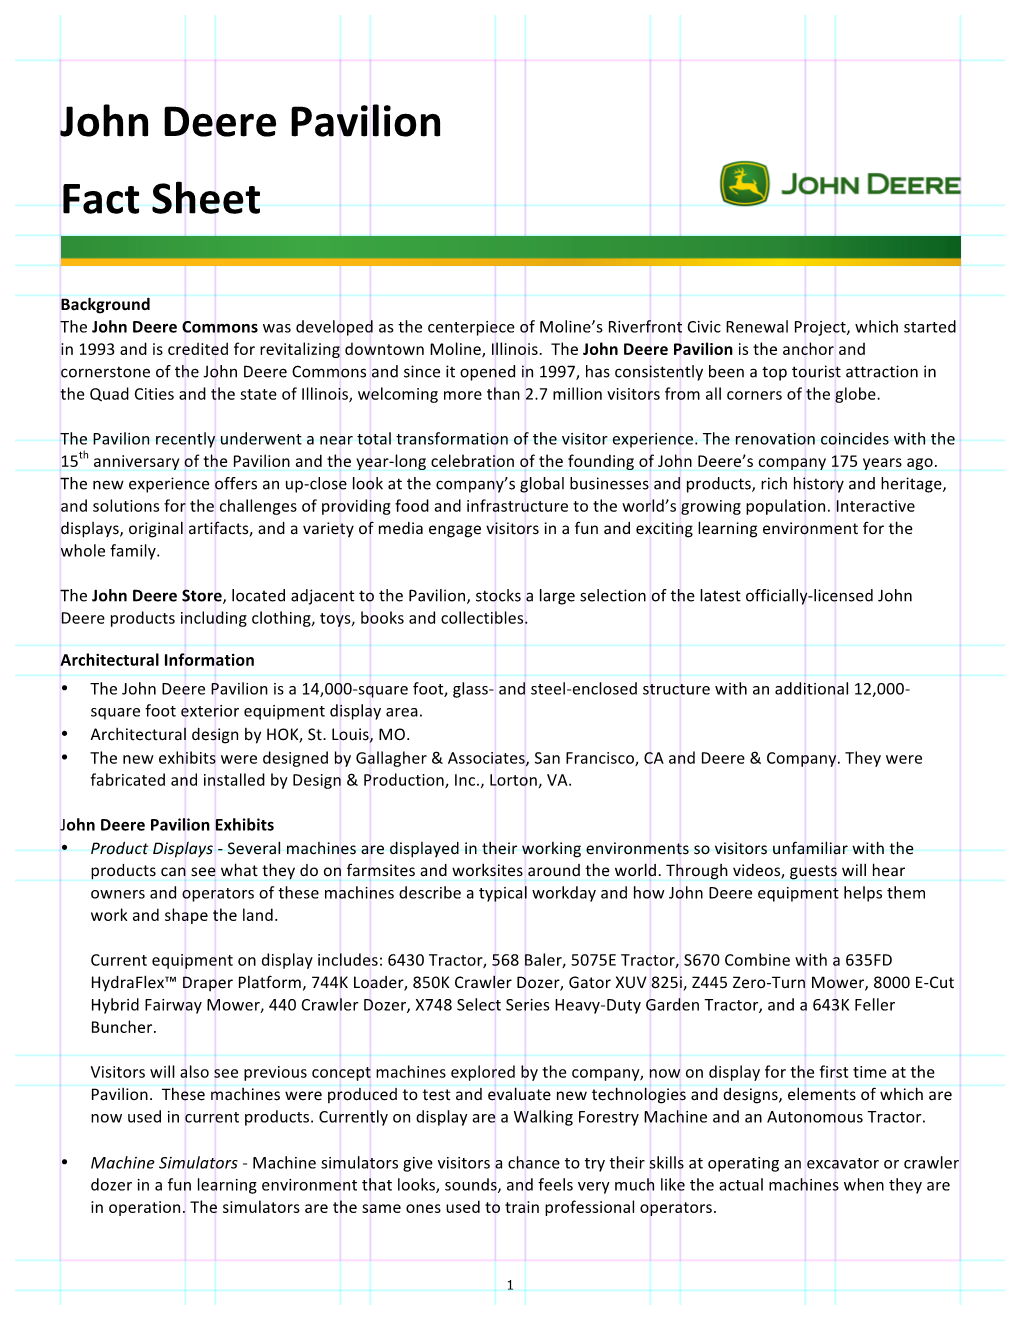 John Deere Pavilion Fact Sheet